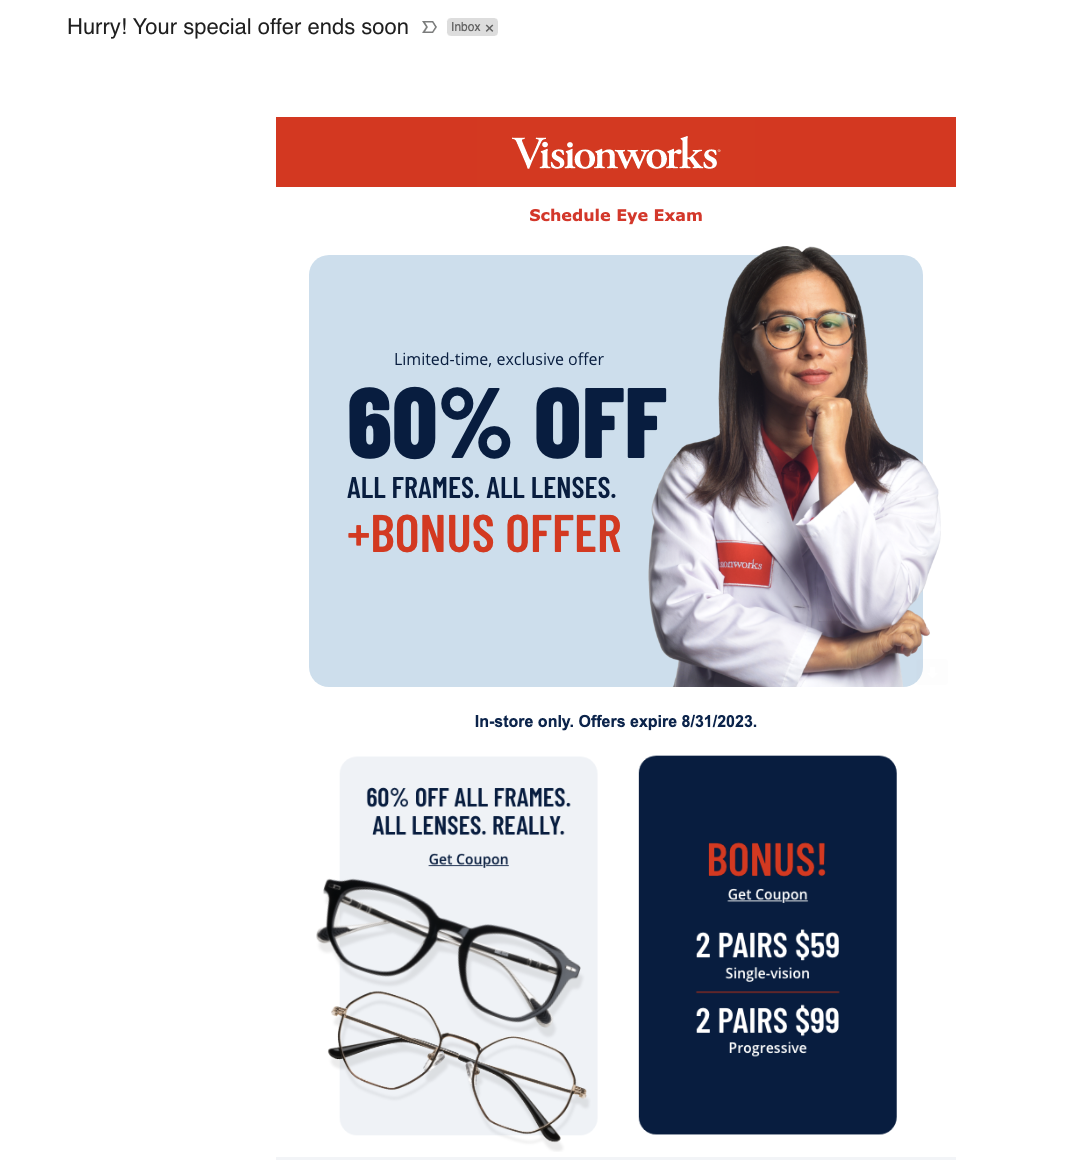 sales funnel visionworks